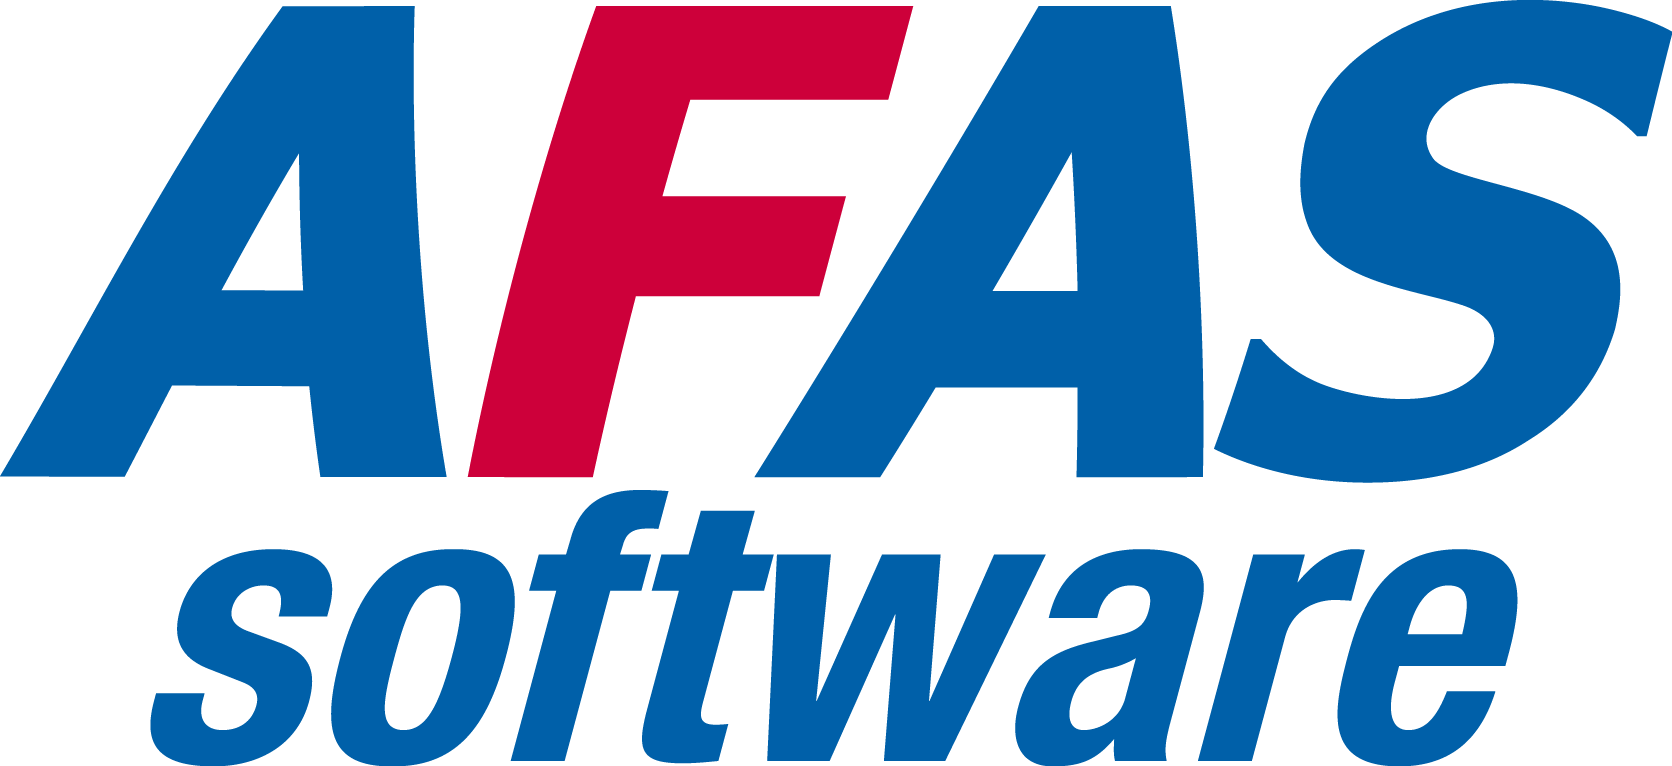 AFAS Offline logo